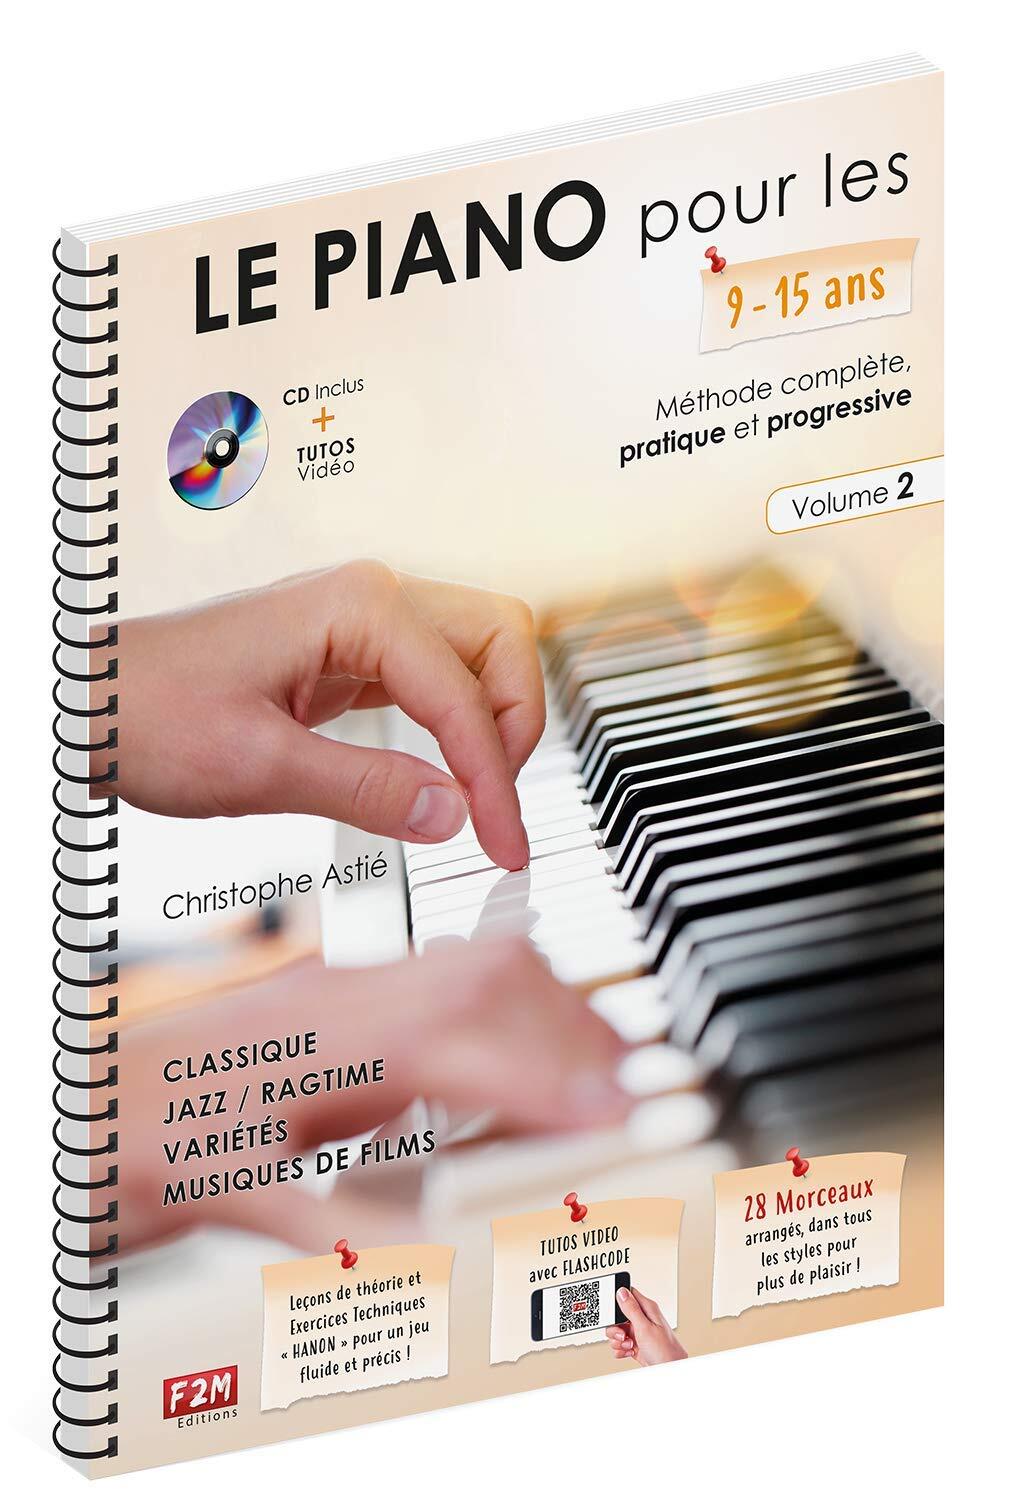 Edition F2M Le Piano Pour Les 9-15 Ans Volume 2 Christophe Astié : photo 1